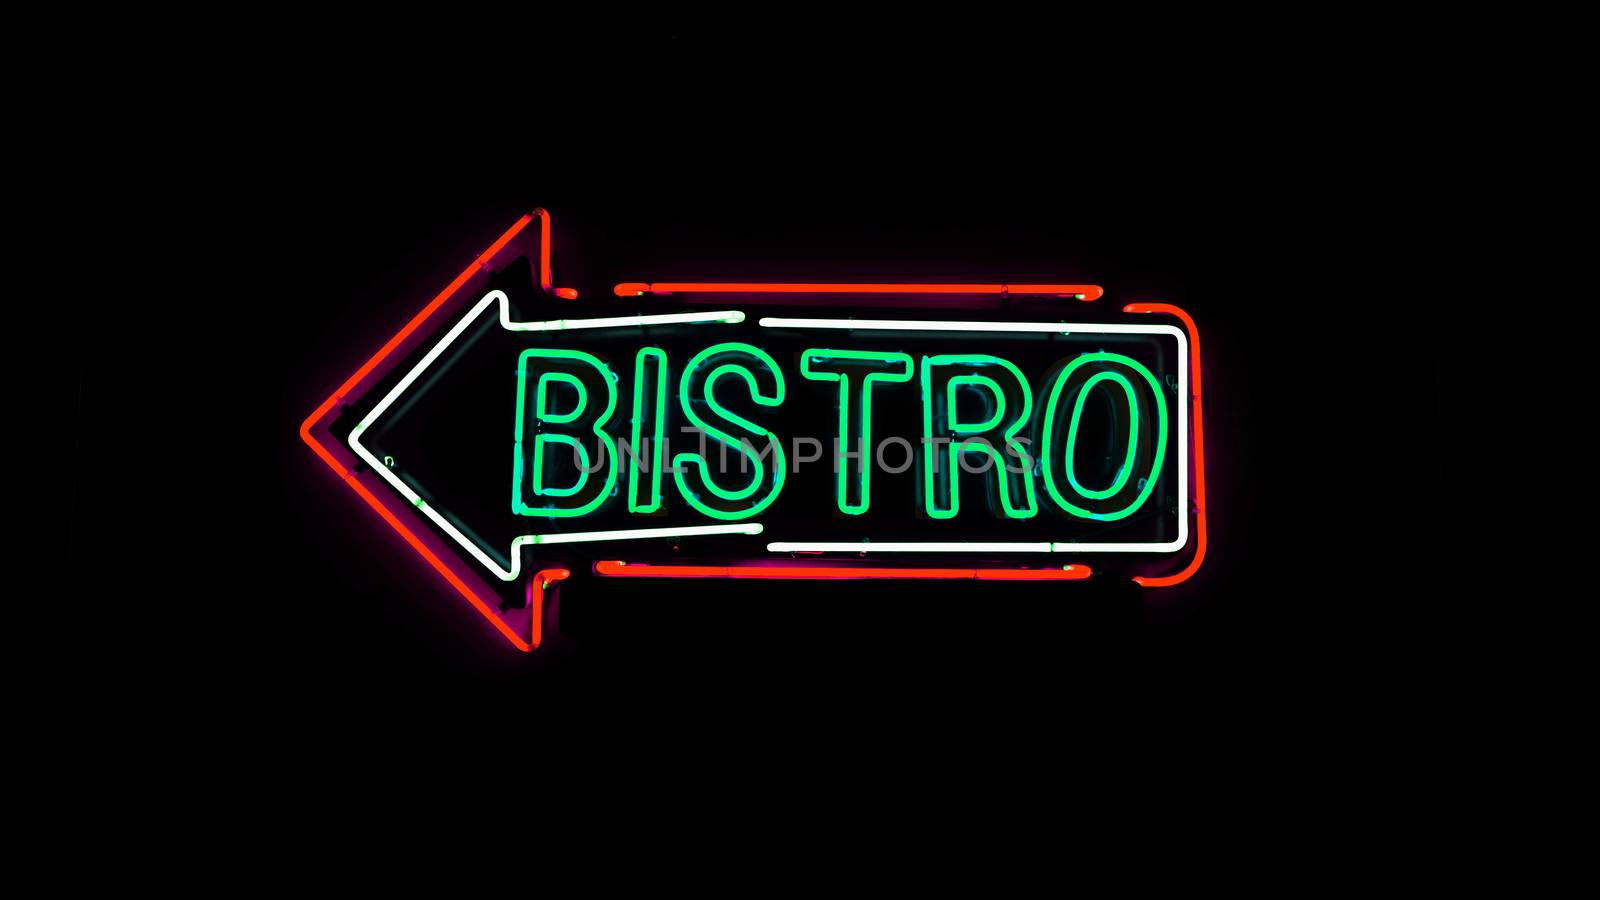 Bistro neon sign. by gnepphoto